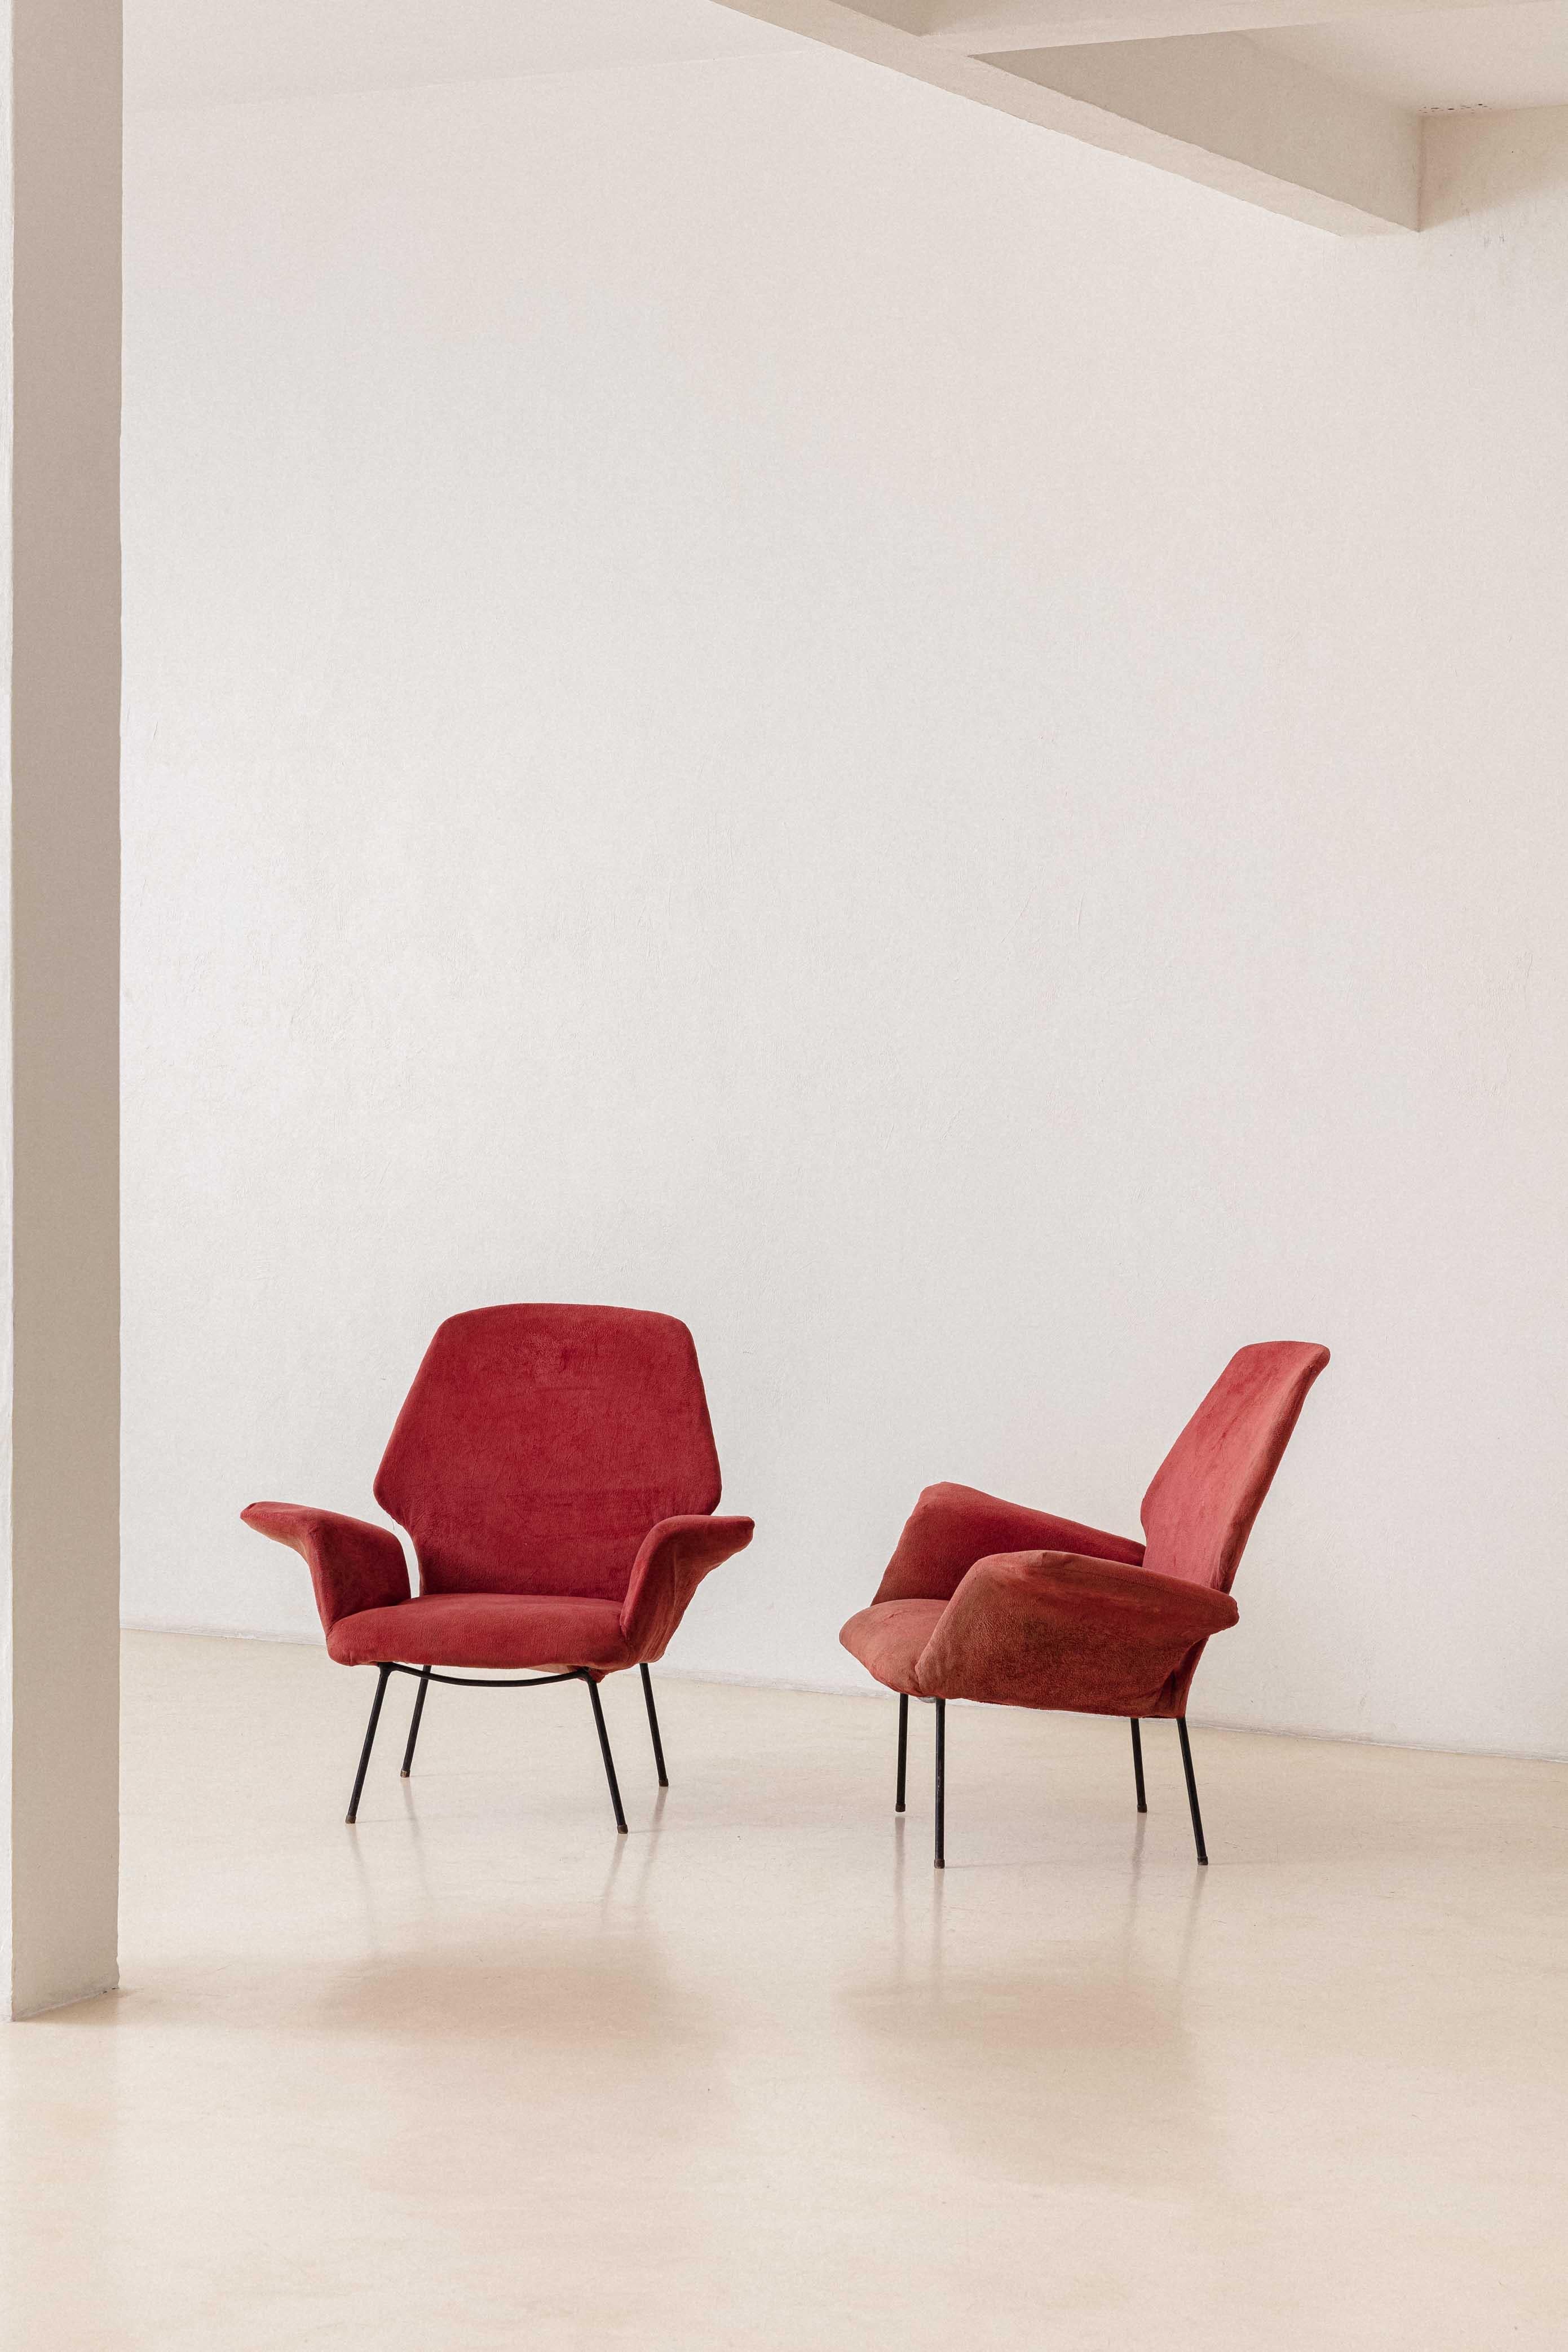 Este impresionante sillón fue producido por la brasileña Forma S.A. Móveis e Objetos de Arte en la década de 1950, empresa dirigida por Carlo Hauner y Martin Eisler. La pieza está hecha con una estructura de hierro y asientos y respaldos